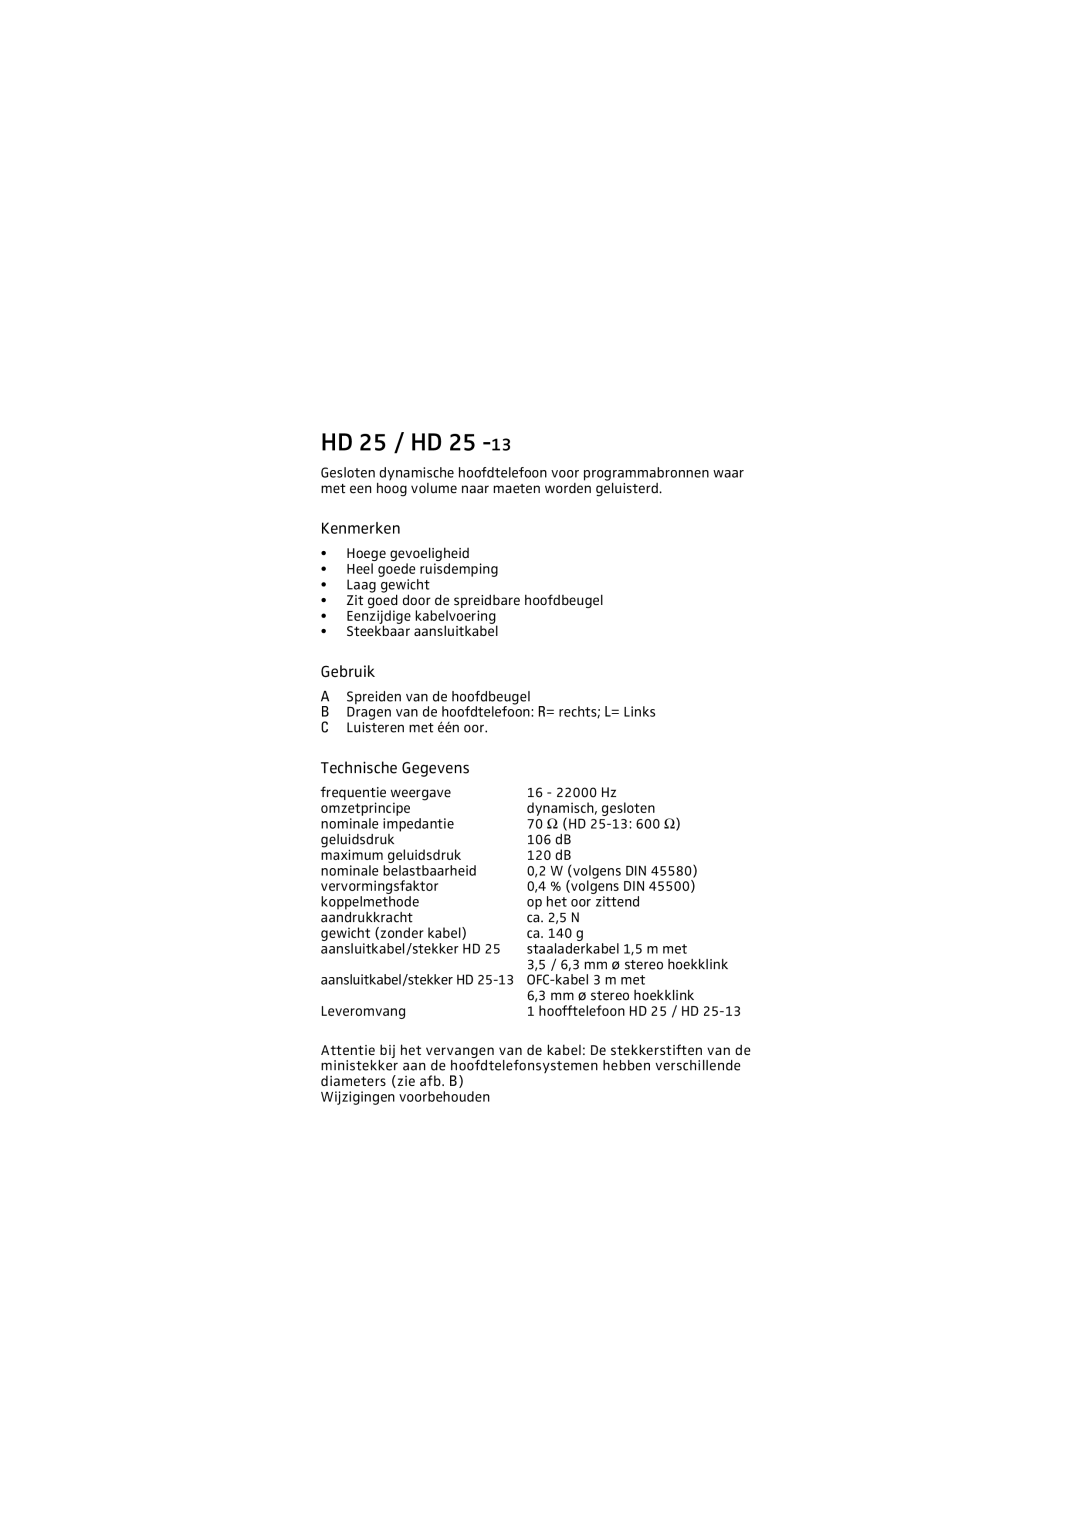 Sennheiser HD 25 - 13 manual Kenmerken, Gebruik, Technische Gegevens, HD 25 / HD 